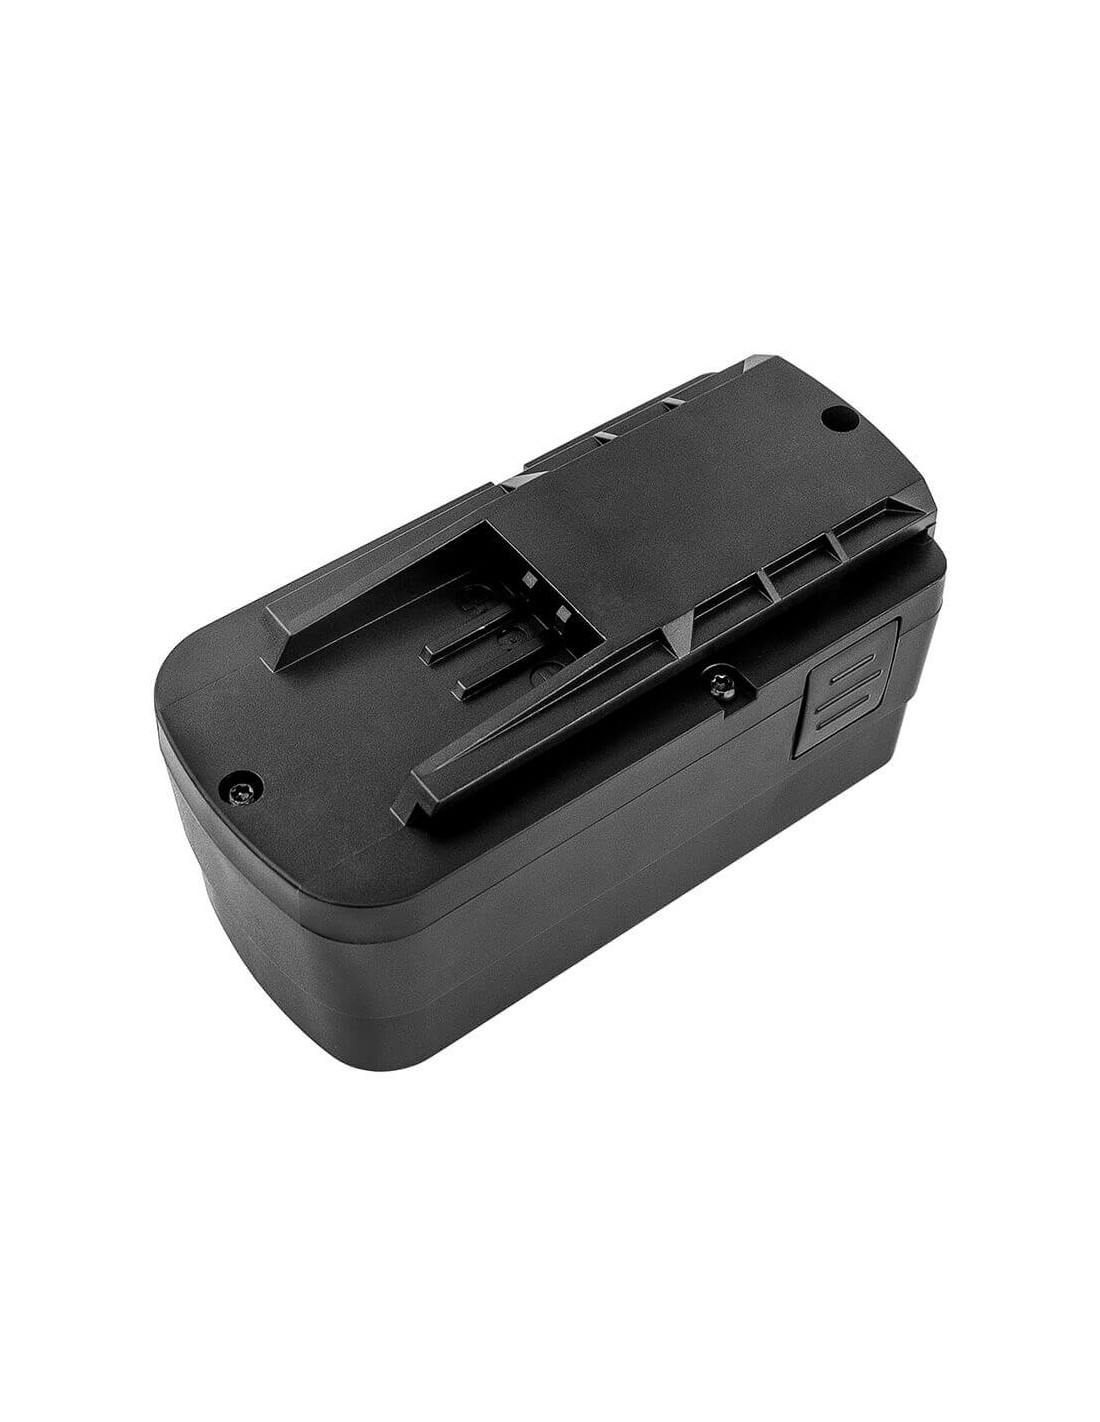 Battery for Festool 398338, 497019, 498336 12V, 2100mAh - 25.20Wh